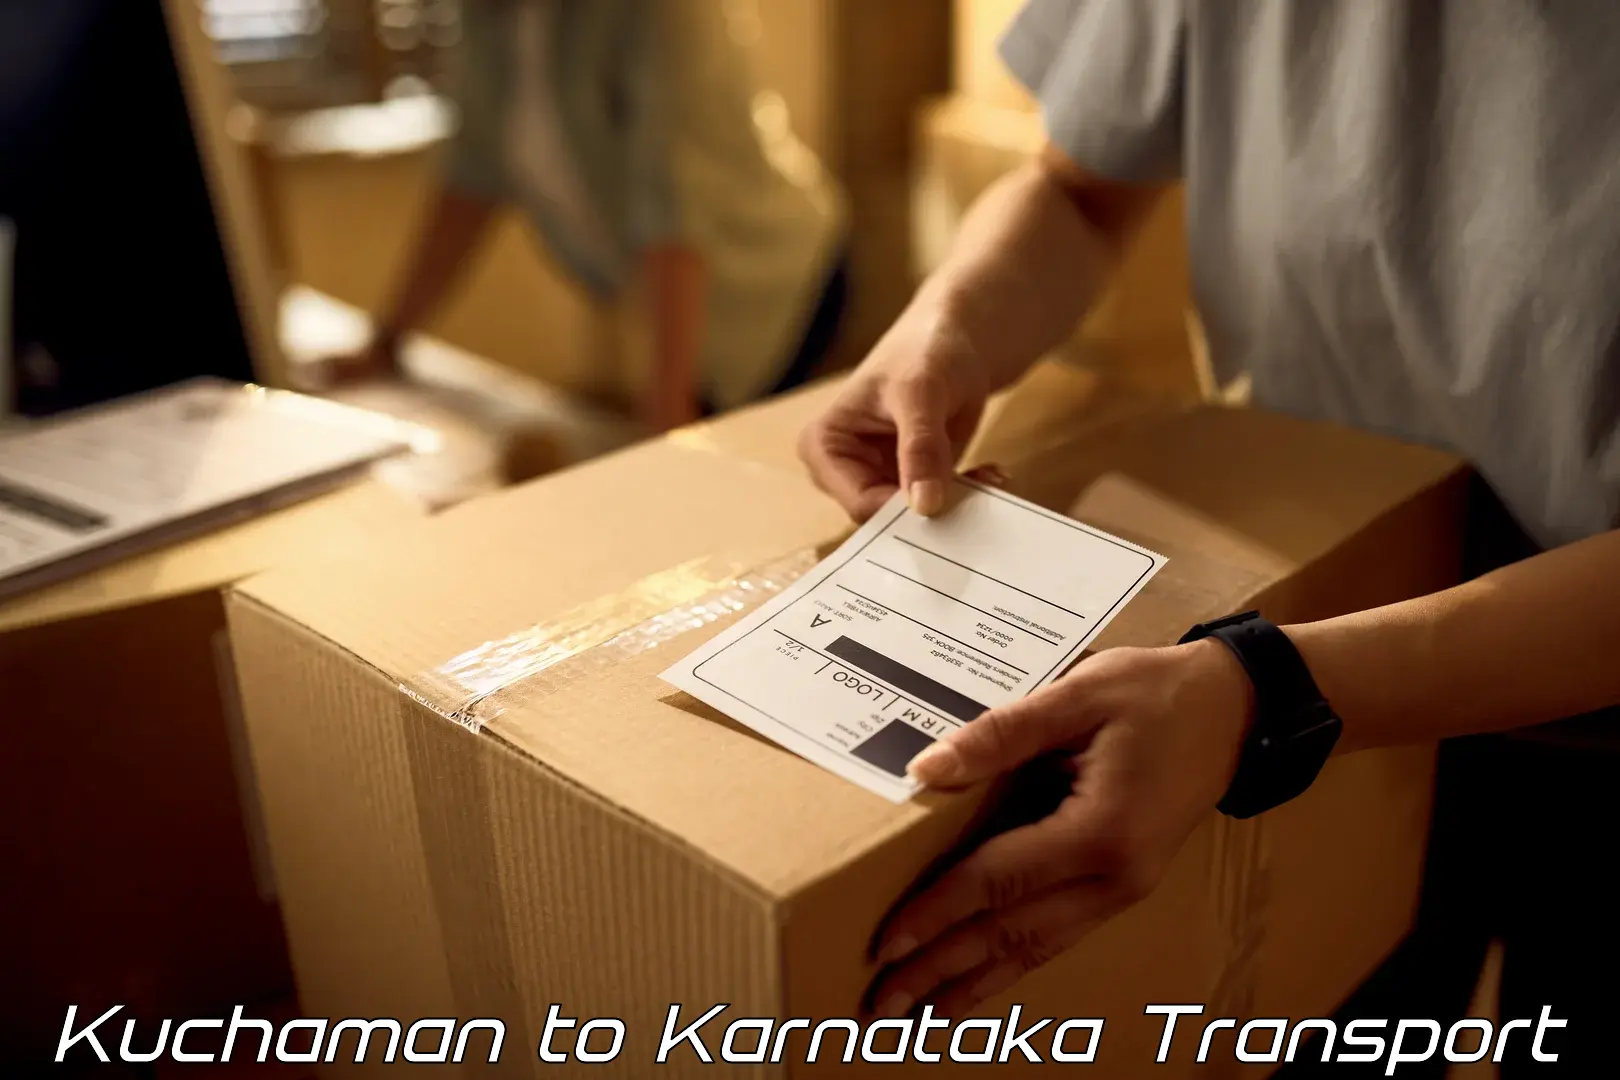 Truck transport companies in India Kuchaman to Thirthahalli